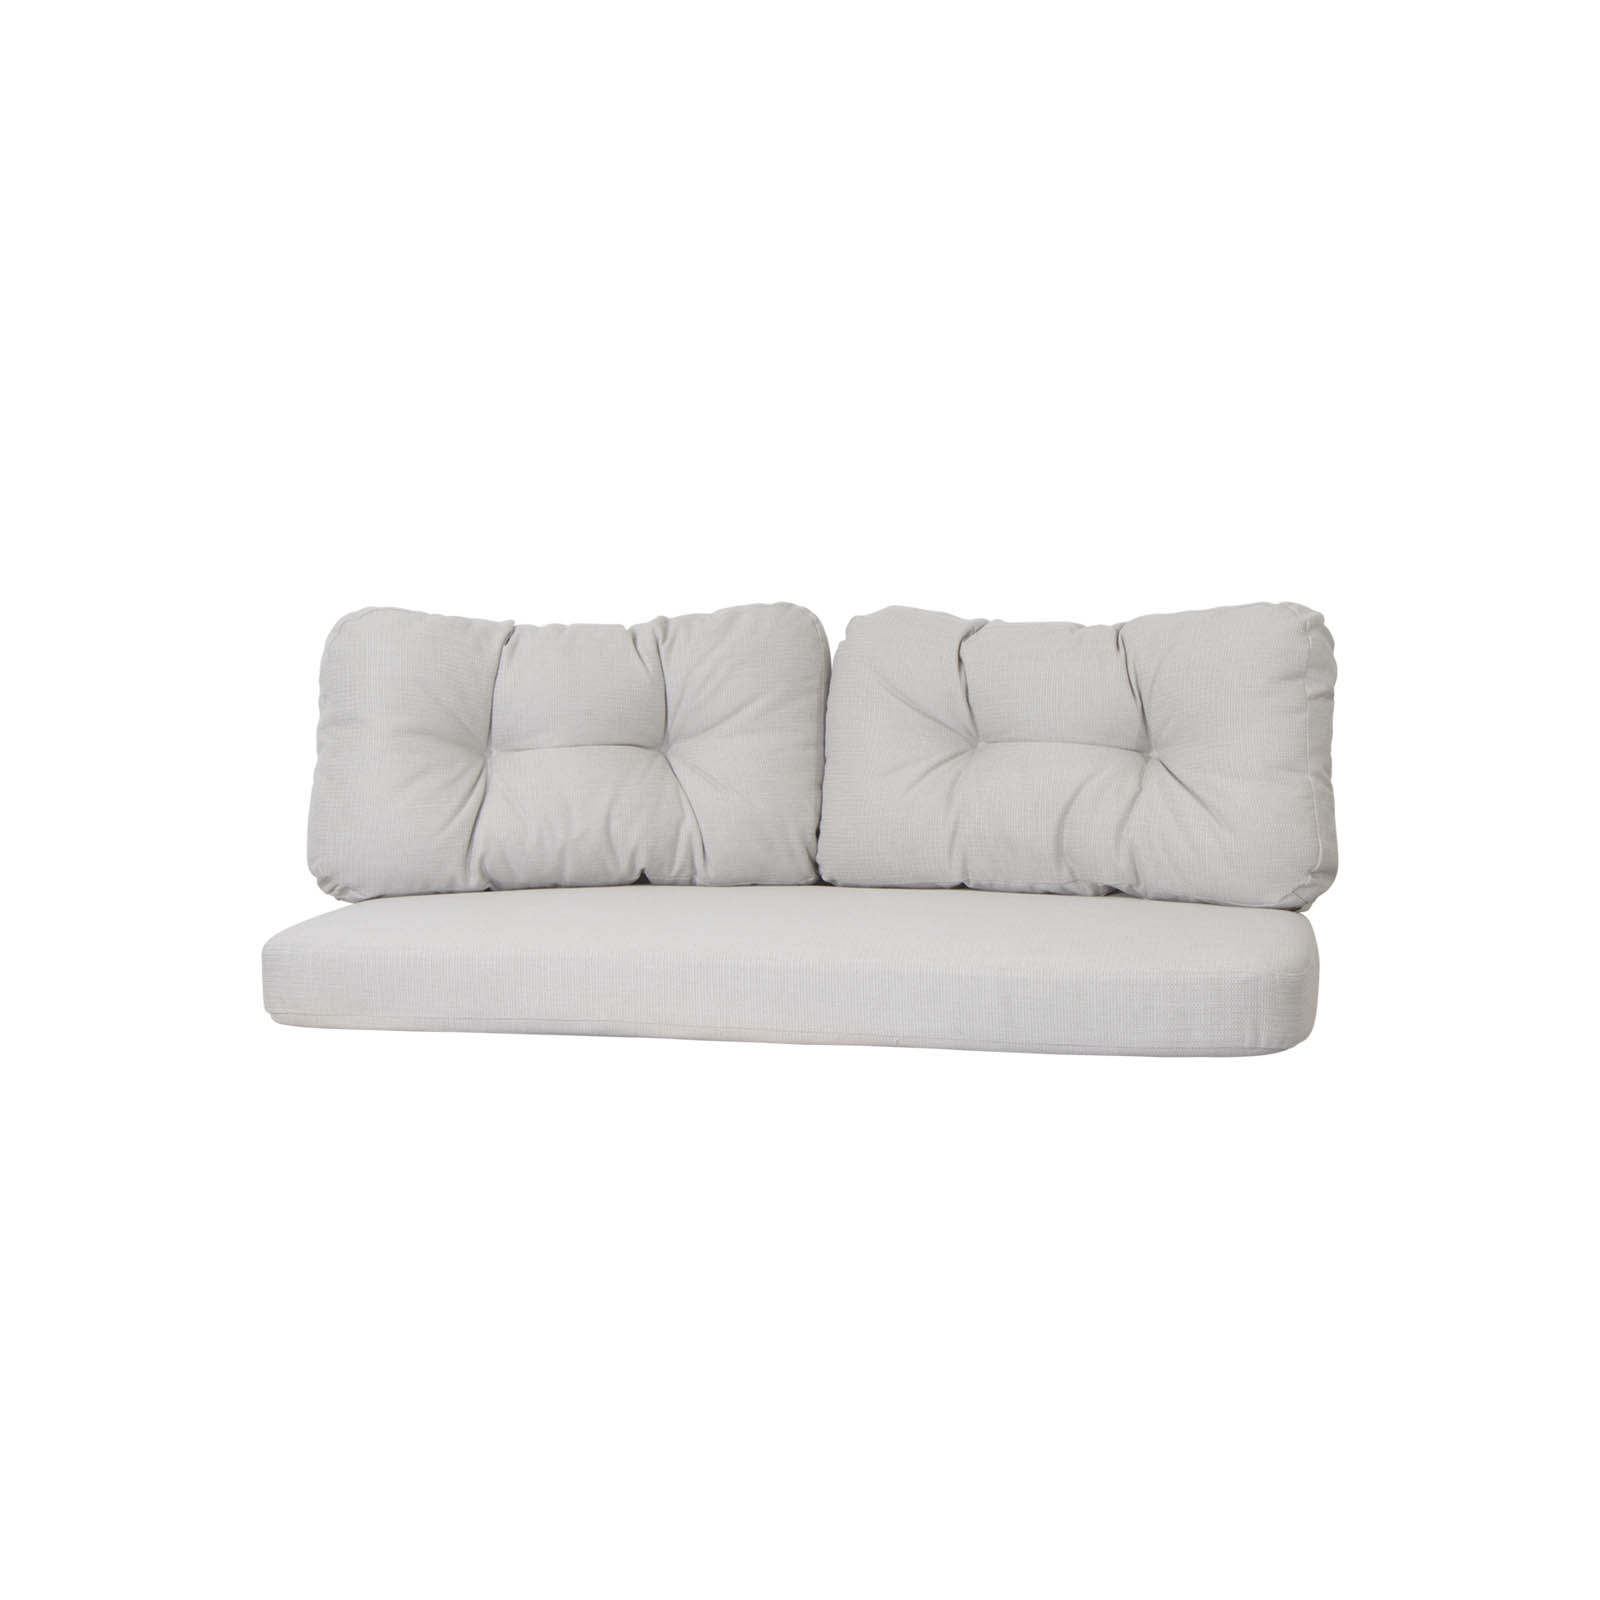 Kissensatz für groß 2-Sitzer Sofa Ocean aus CL Link in White Grey